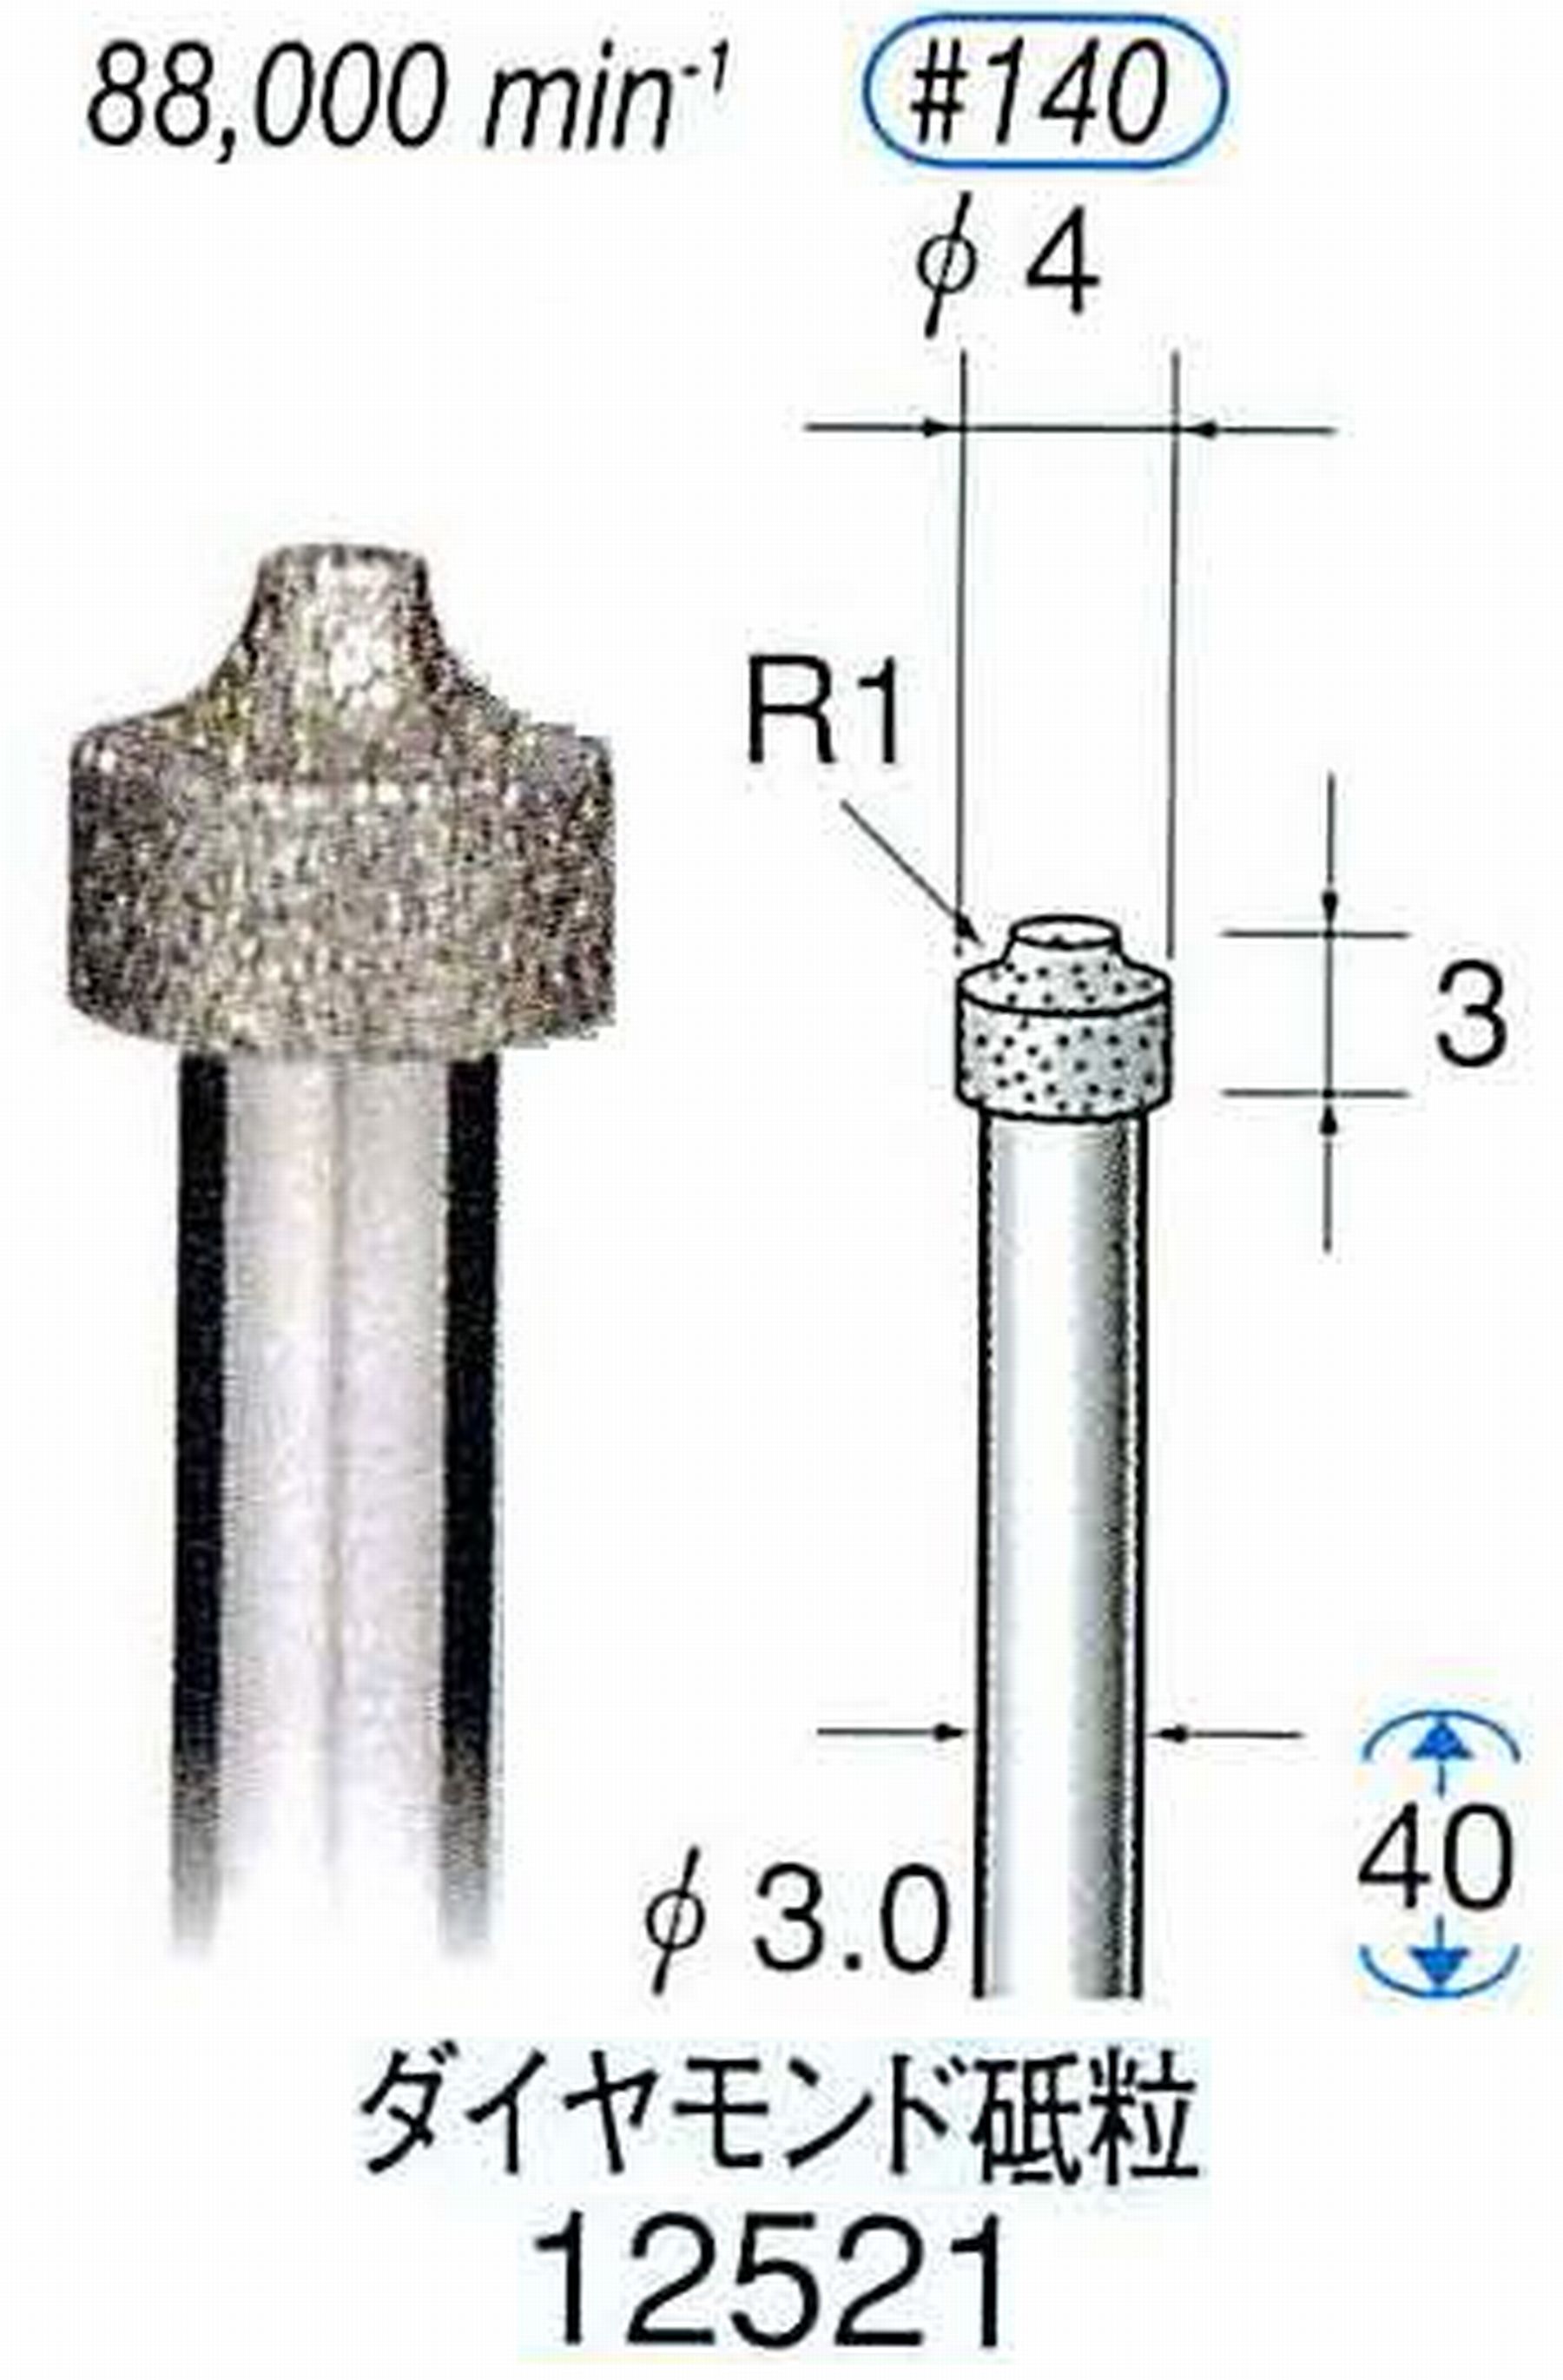 ナカニシ/NAKANISHI 電着ダイヤモンド ダイヤモンド砥粒 軸径(シャンク)φ3.0mm 12521